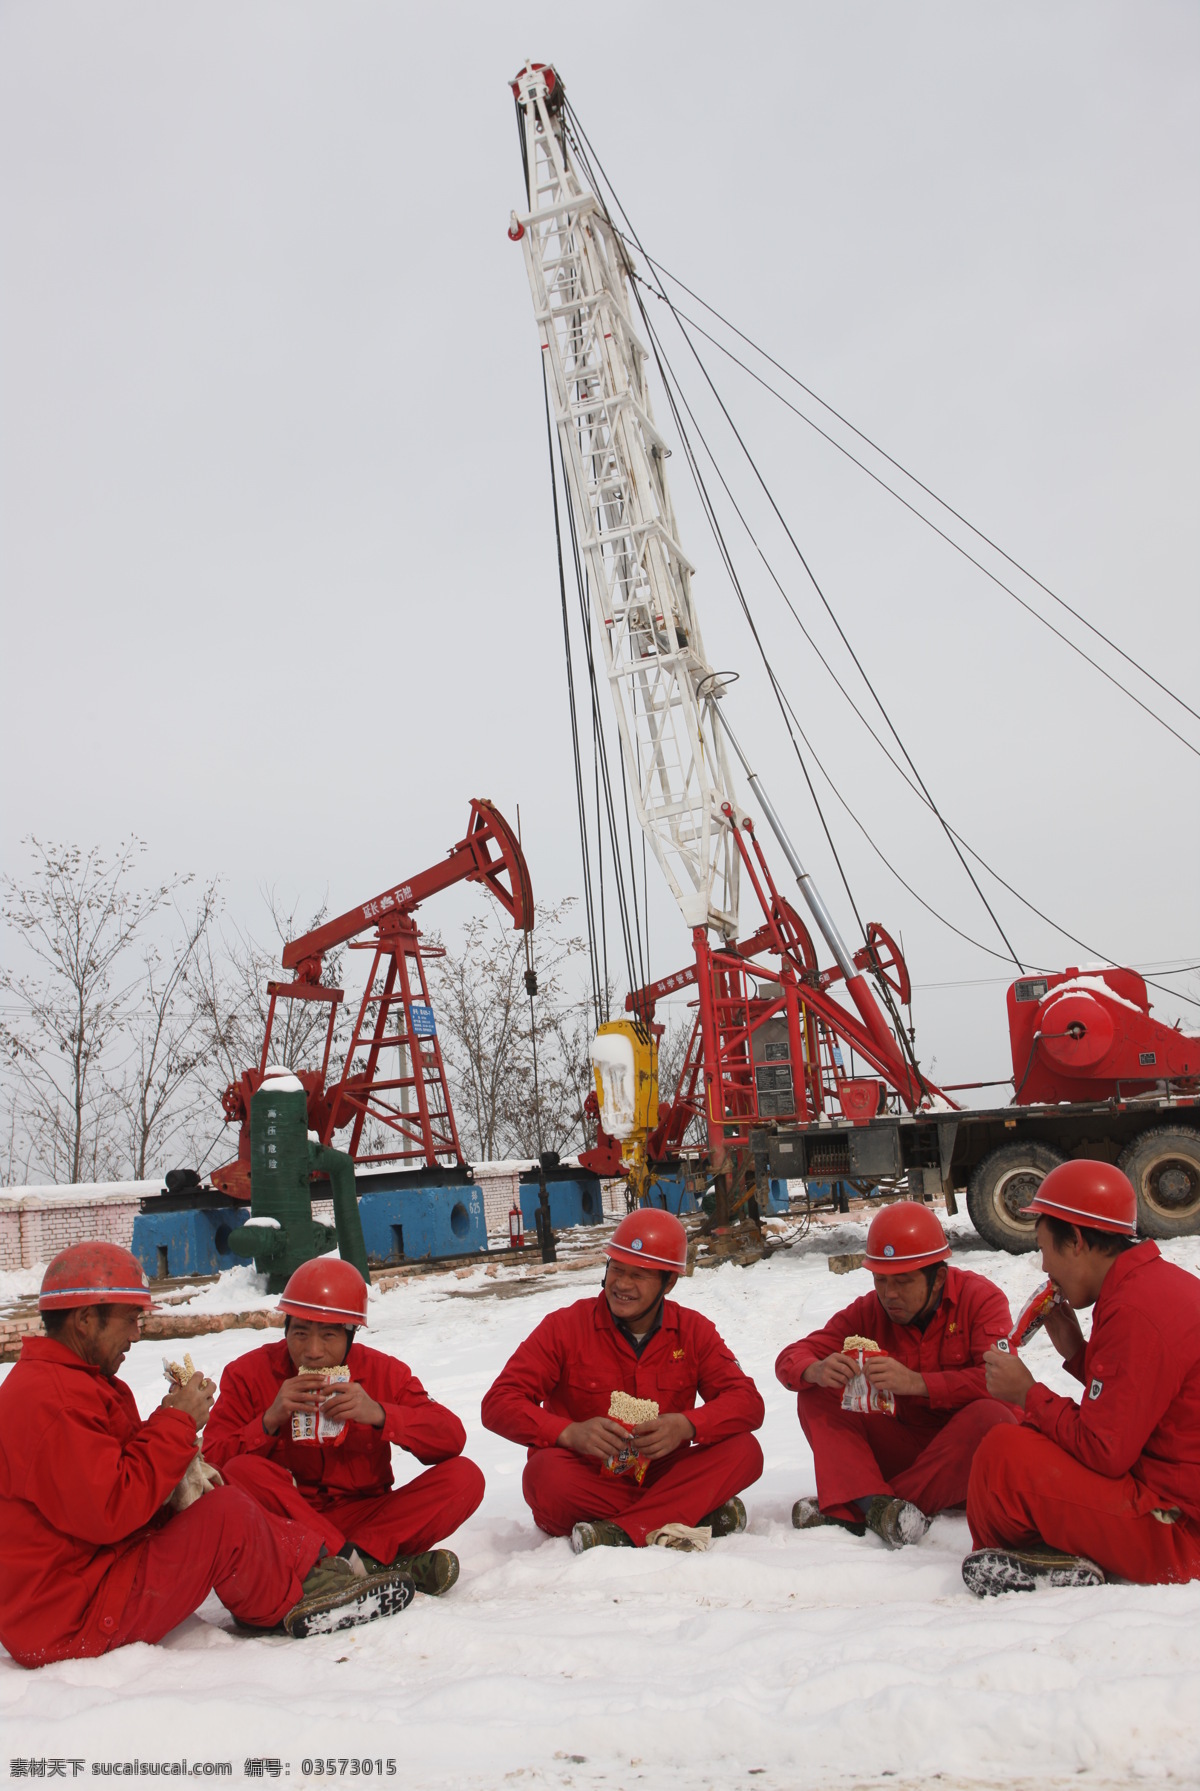 石油工人 石油 工人 延长石油 抽油机 照片 职业人物 人物图库